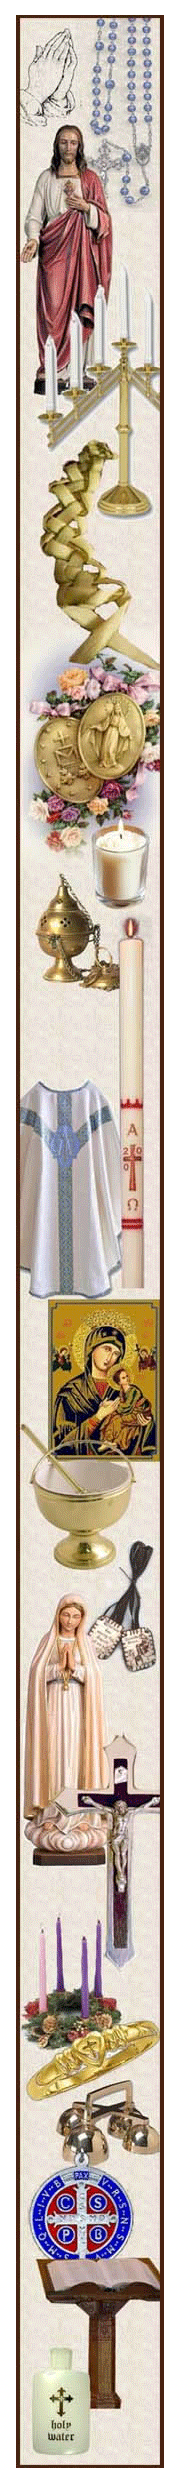 Example of sacramentals